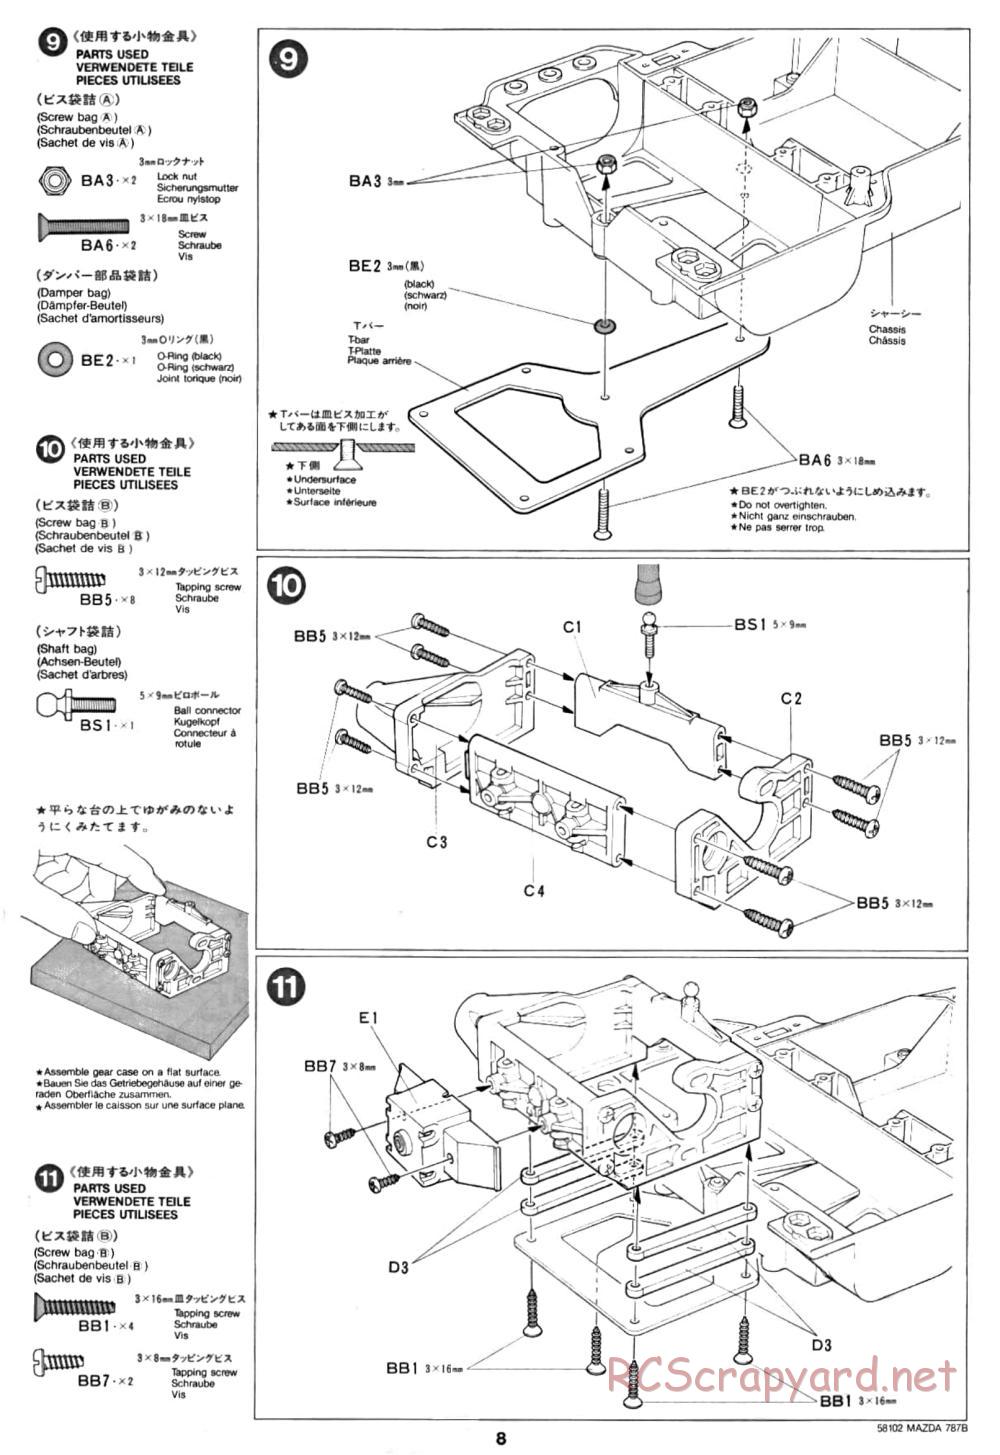 Tamiya - Mazda 787B - Group-C Chassis - Manual - Page 8